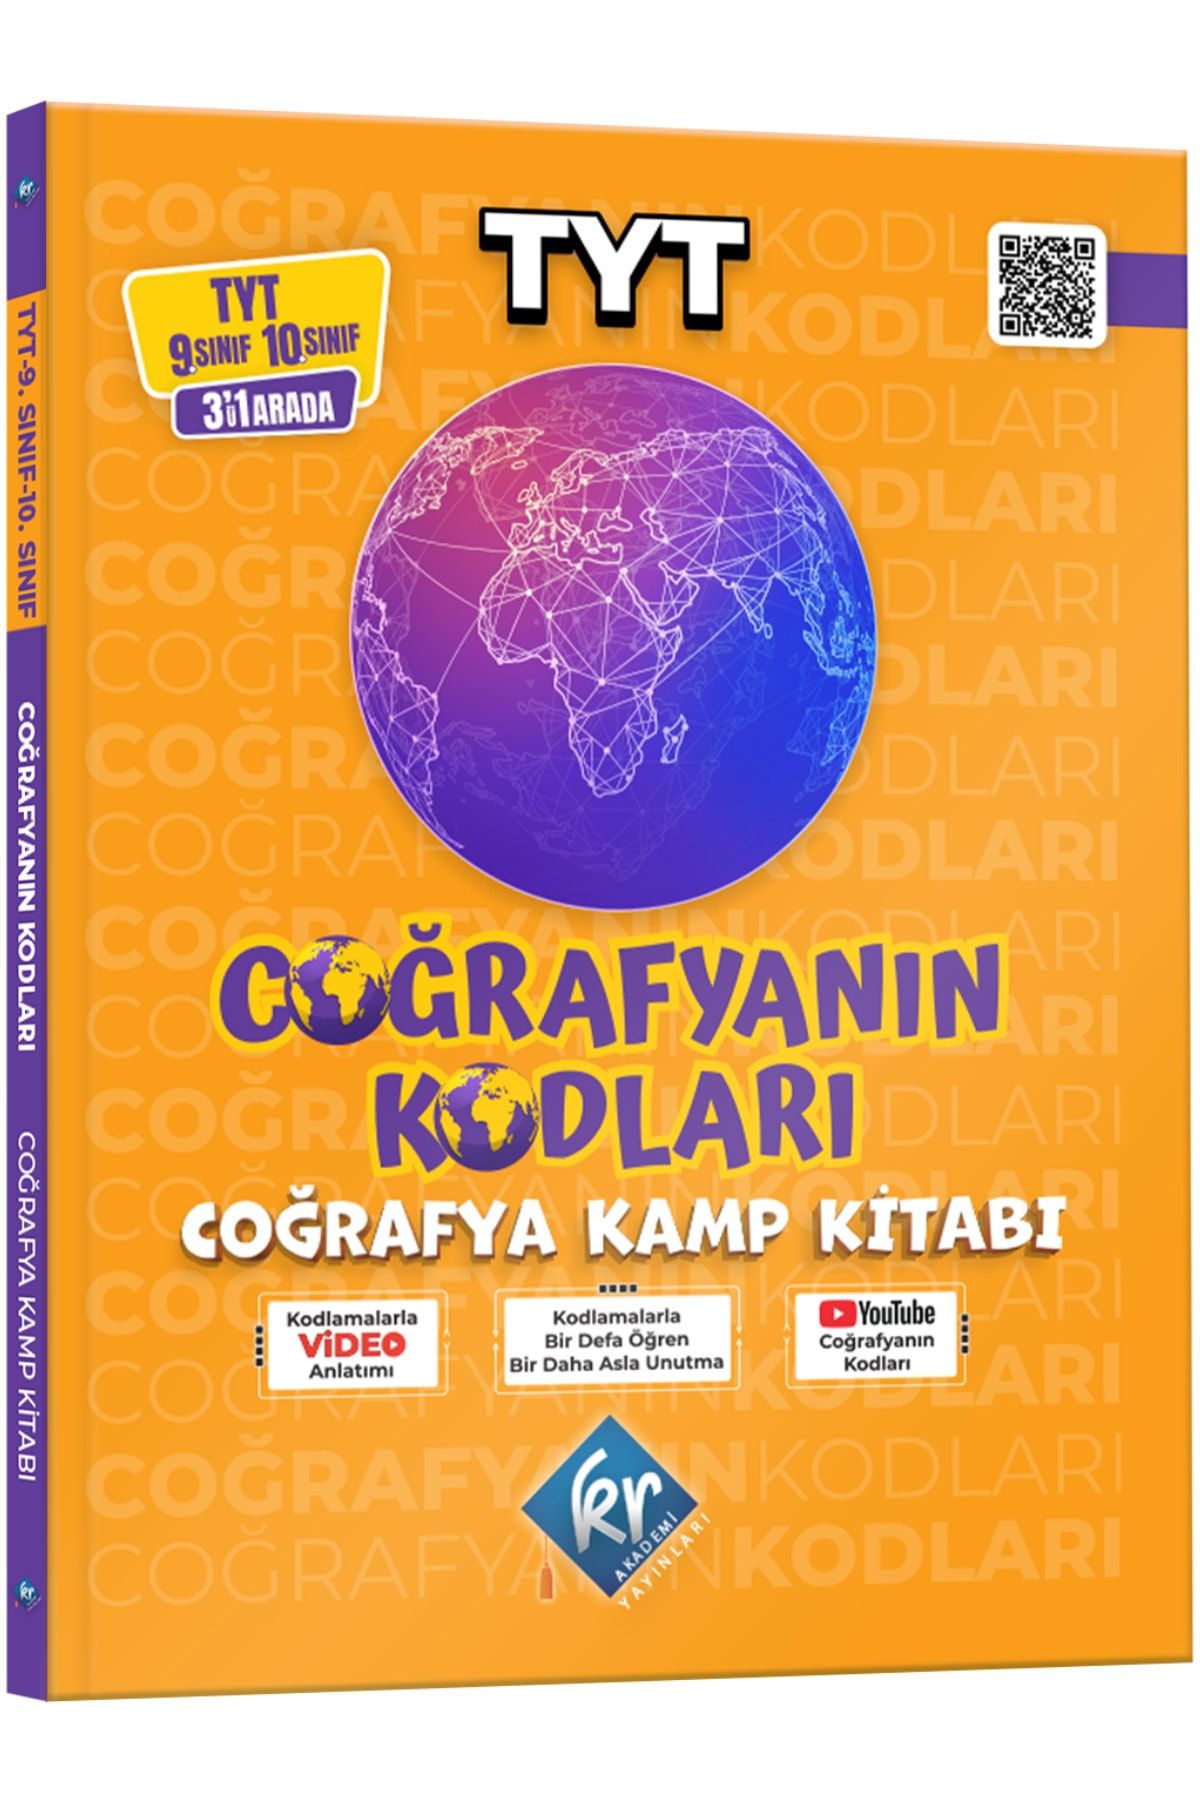 KR Akademi Yayınları Tyt Coğrafya 9. Sınıf 10. Sınıf Coğrafyanın Kodları Video Ders Kitabı